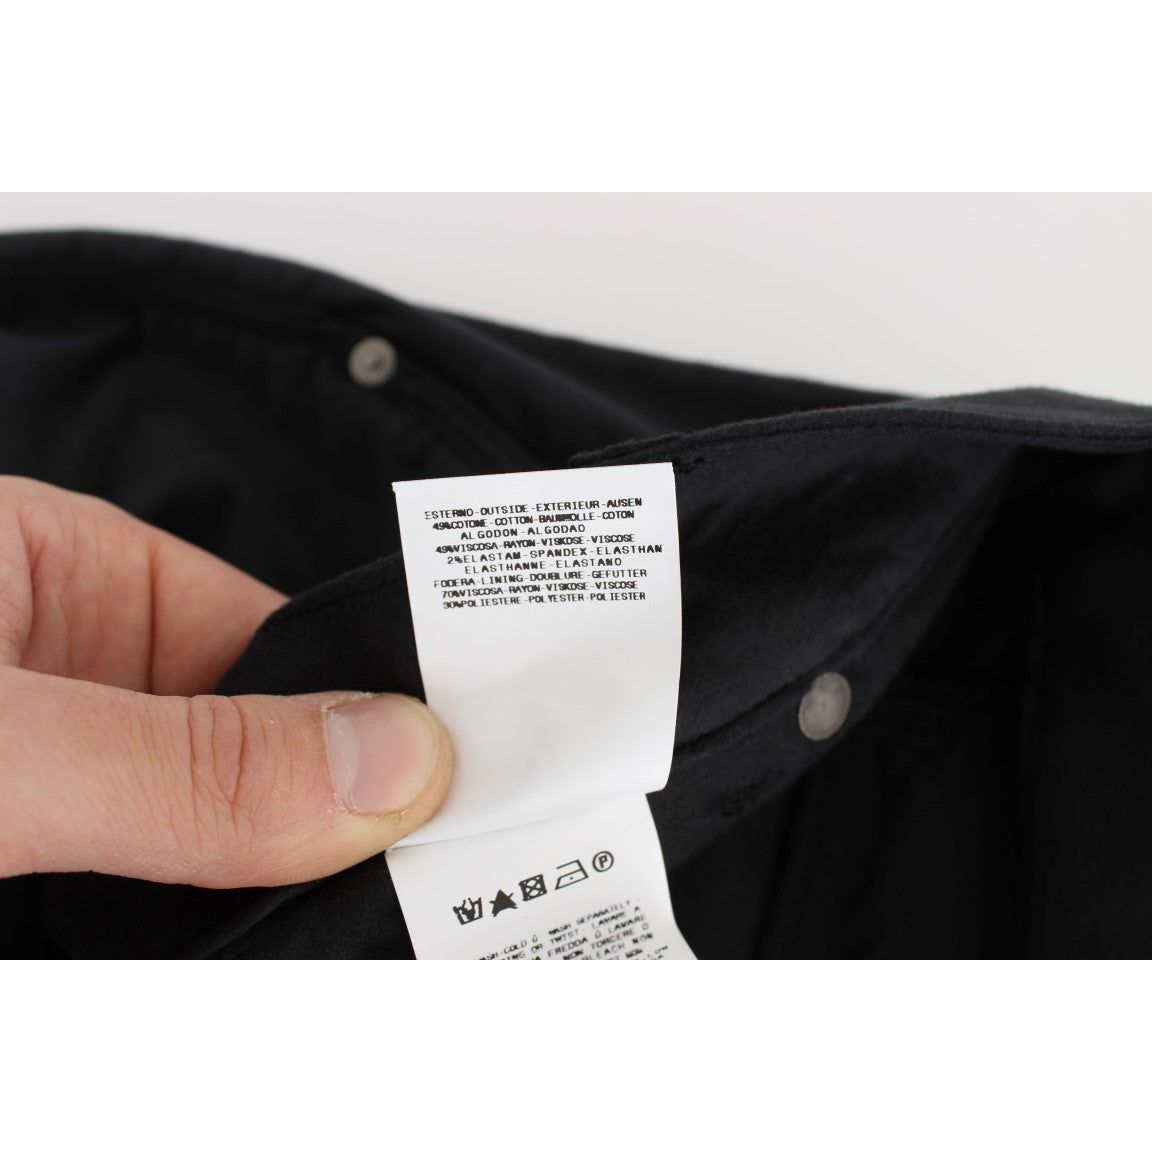 Ermanno Scervino | Black Cotton Blend Regular Fit Pants | McRichard Designer Brands